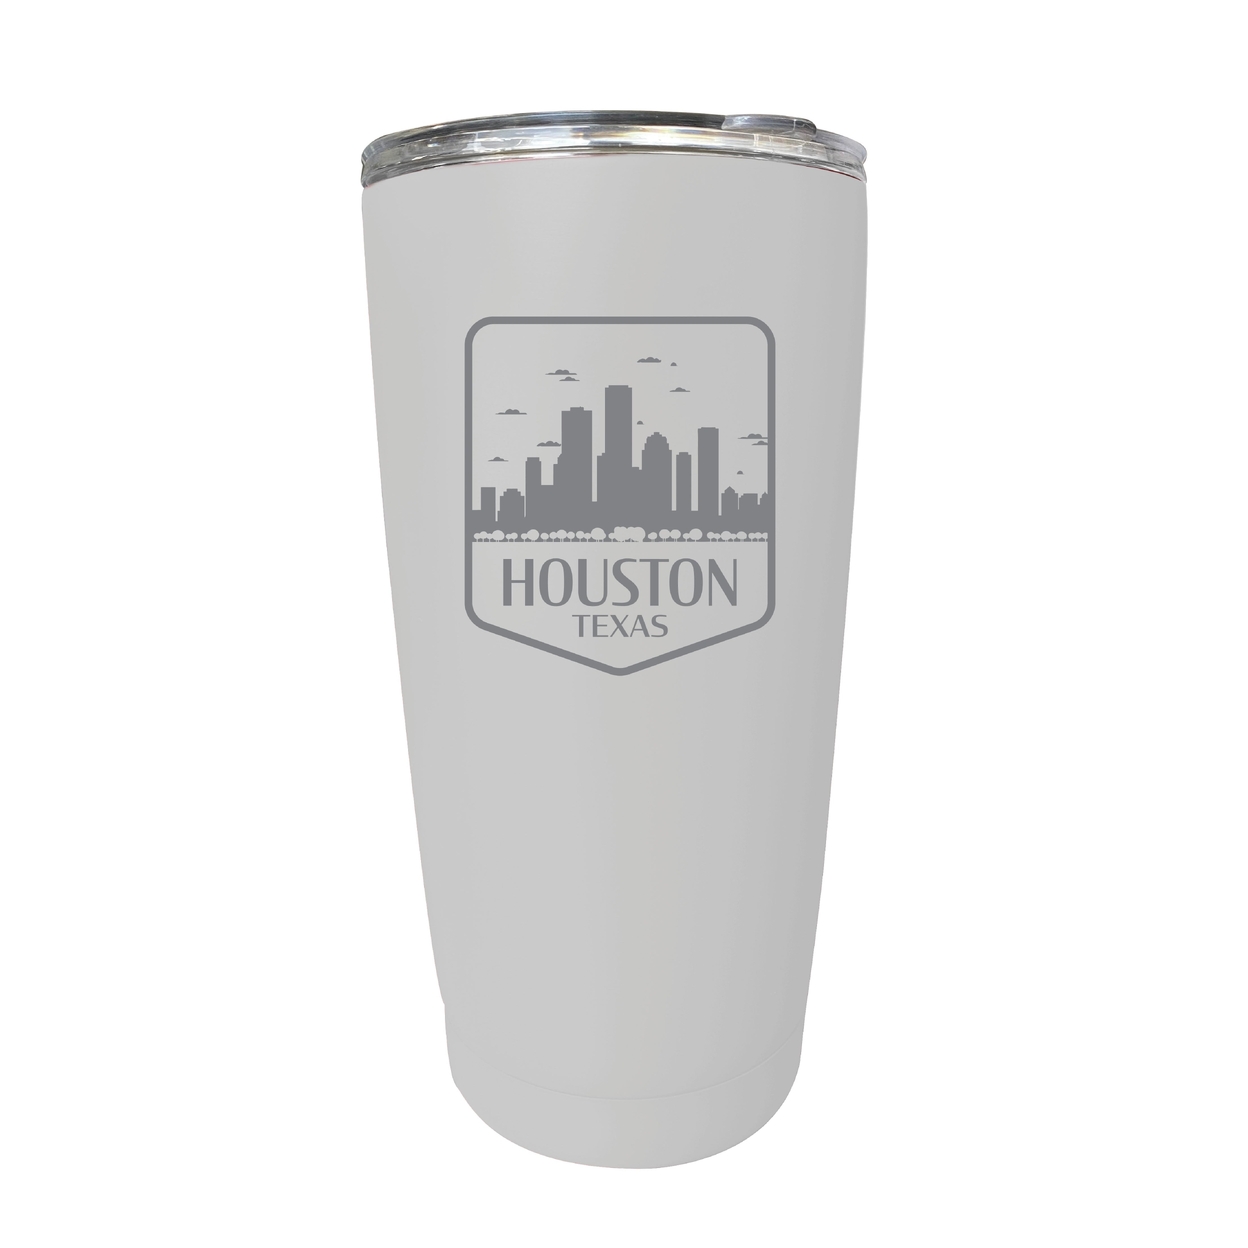 Houston Texas Souvenir 16 Oz Engraved Stainless Steel Insulated Tumbler - White,,Single Unit